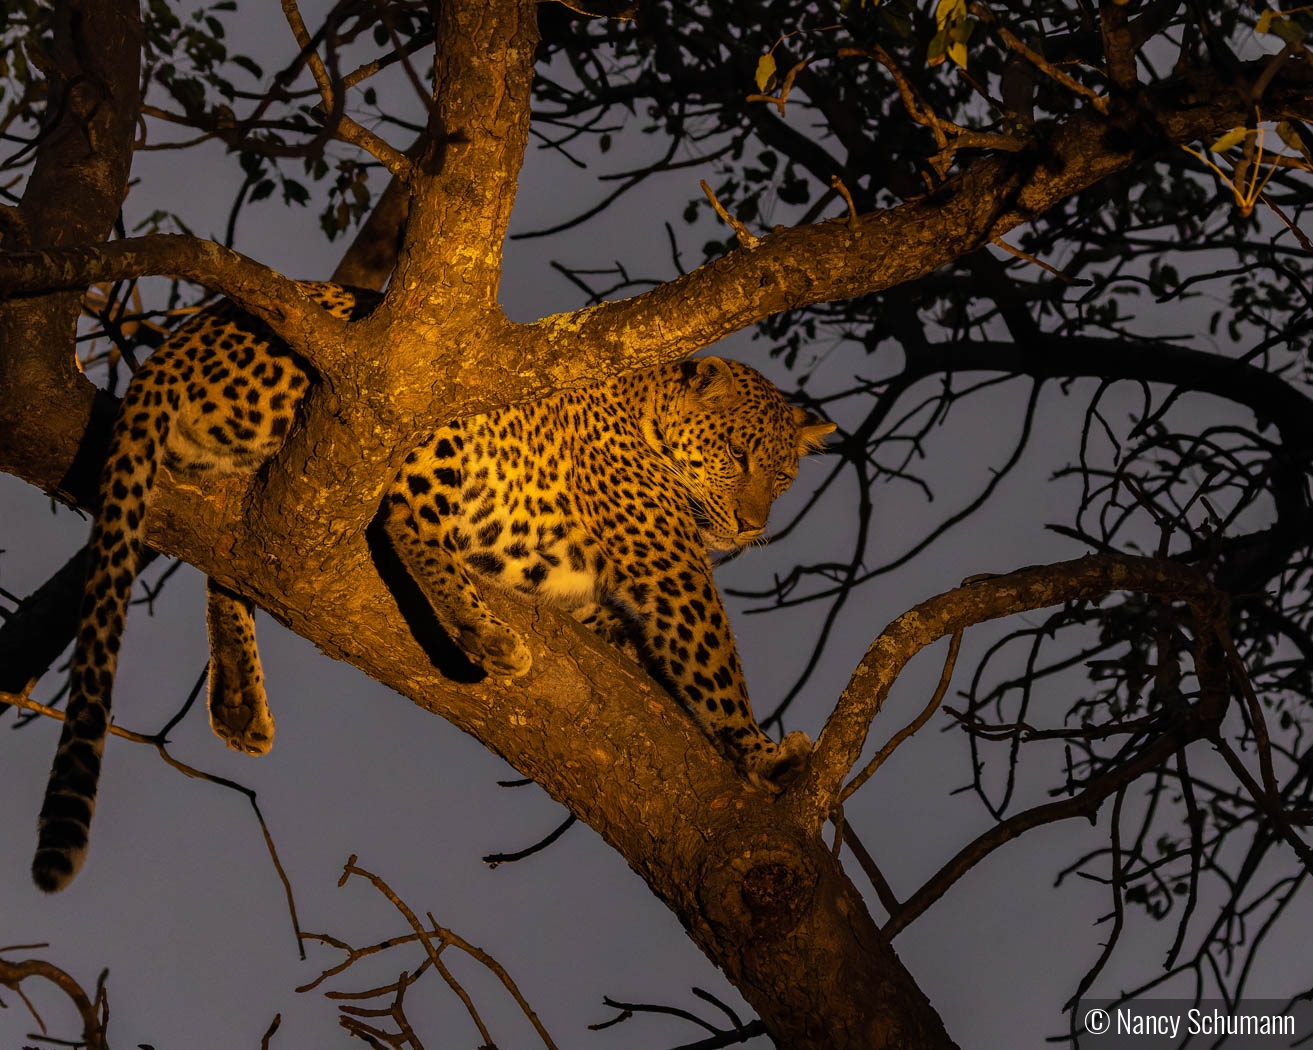 Leopard in Tree by Nancy Schumann